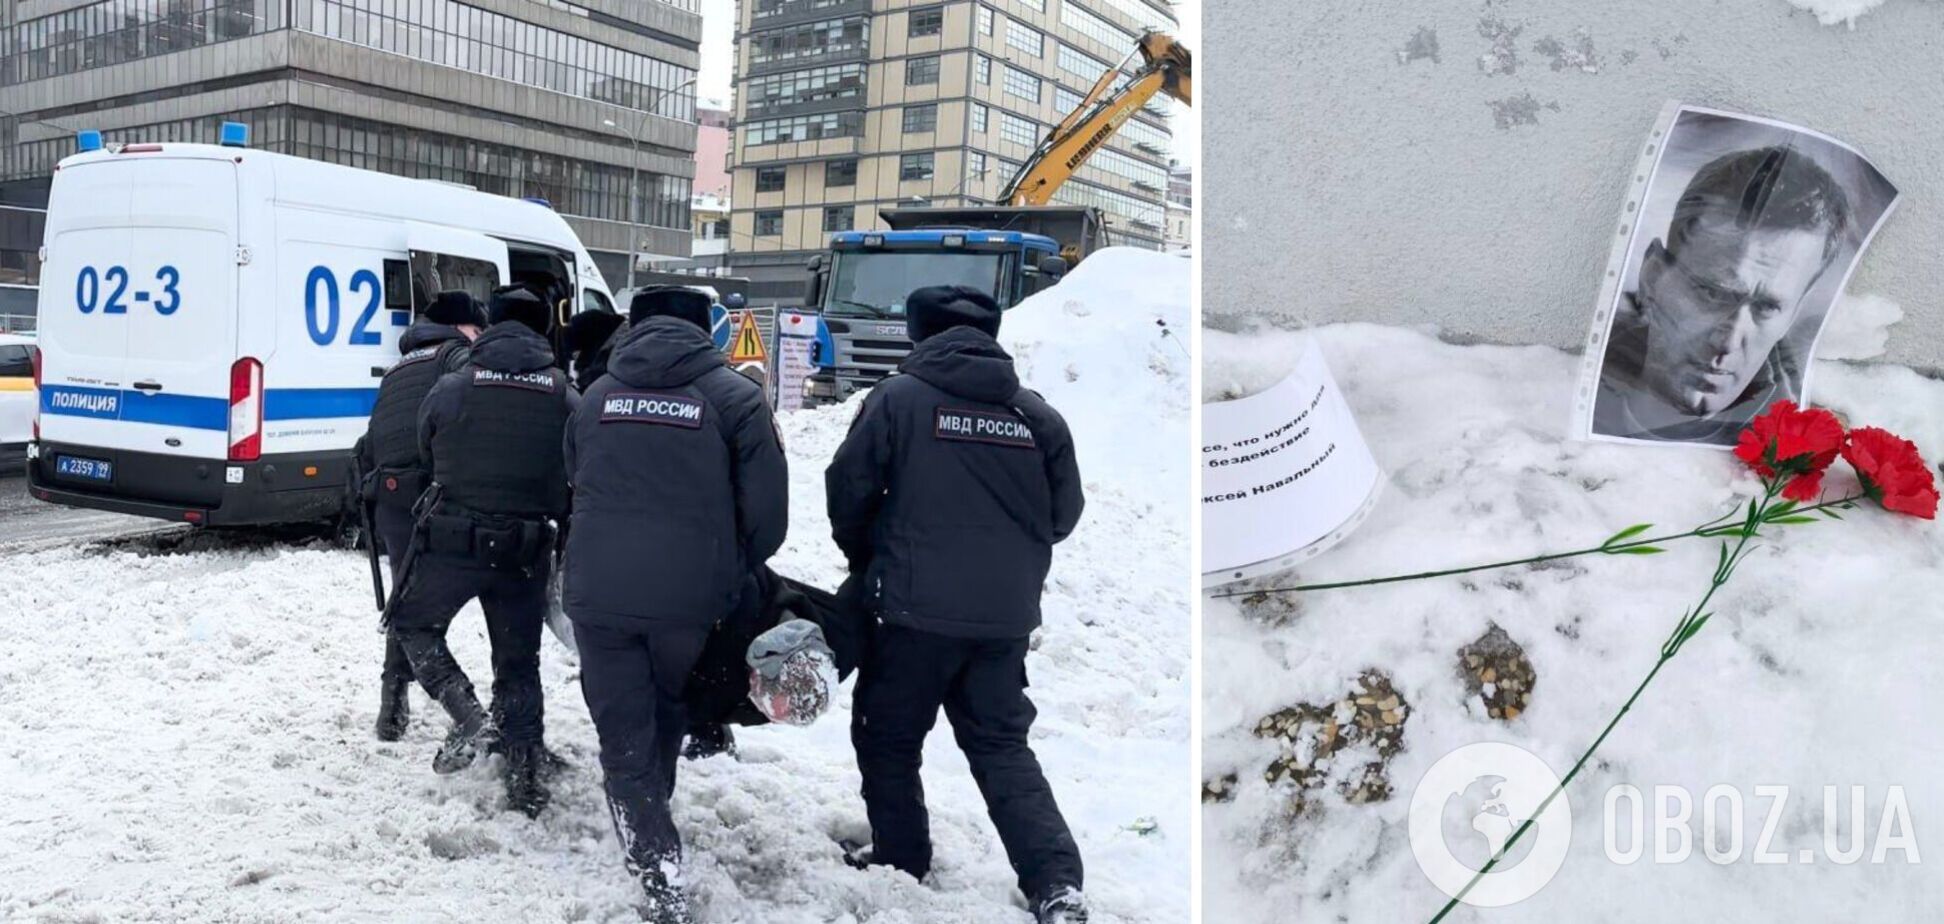 В России около 300 человек вышли возложить цветы в память о Навальном: их задержала полиция. Фото и видео